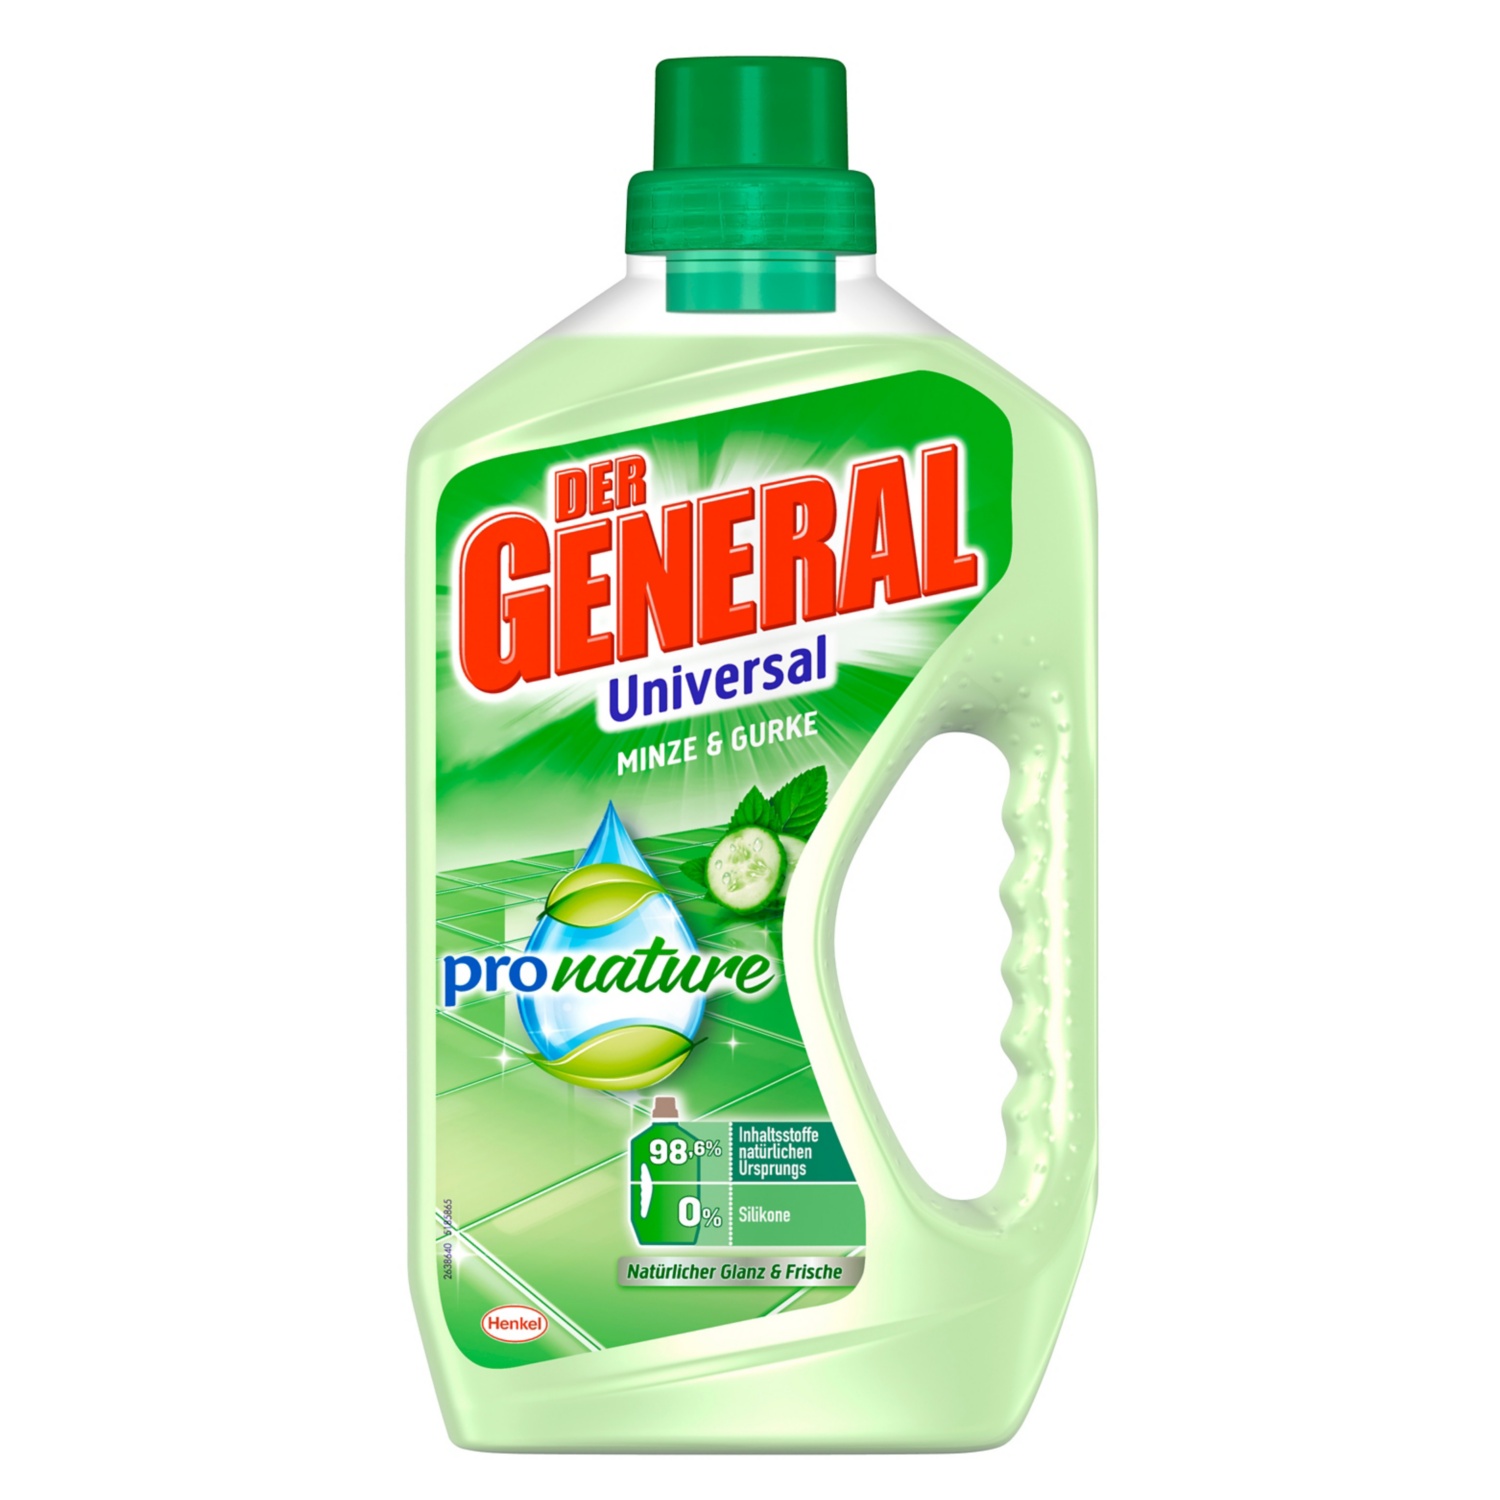 Der General Universal pro nature, Minze & Gurke 750 ml